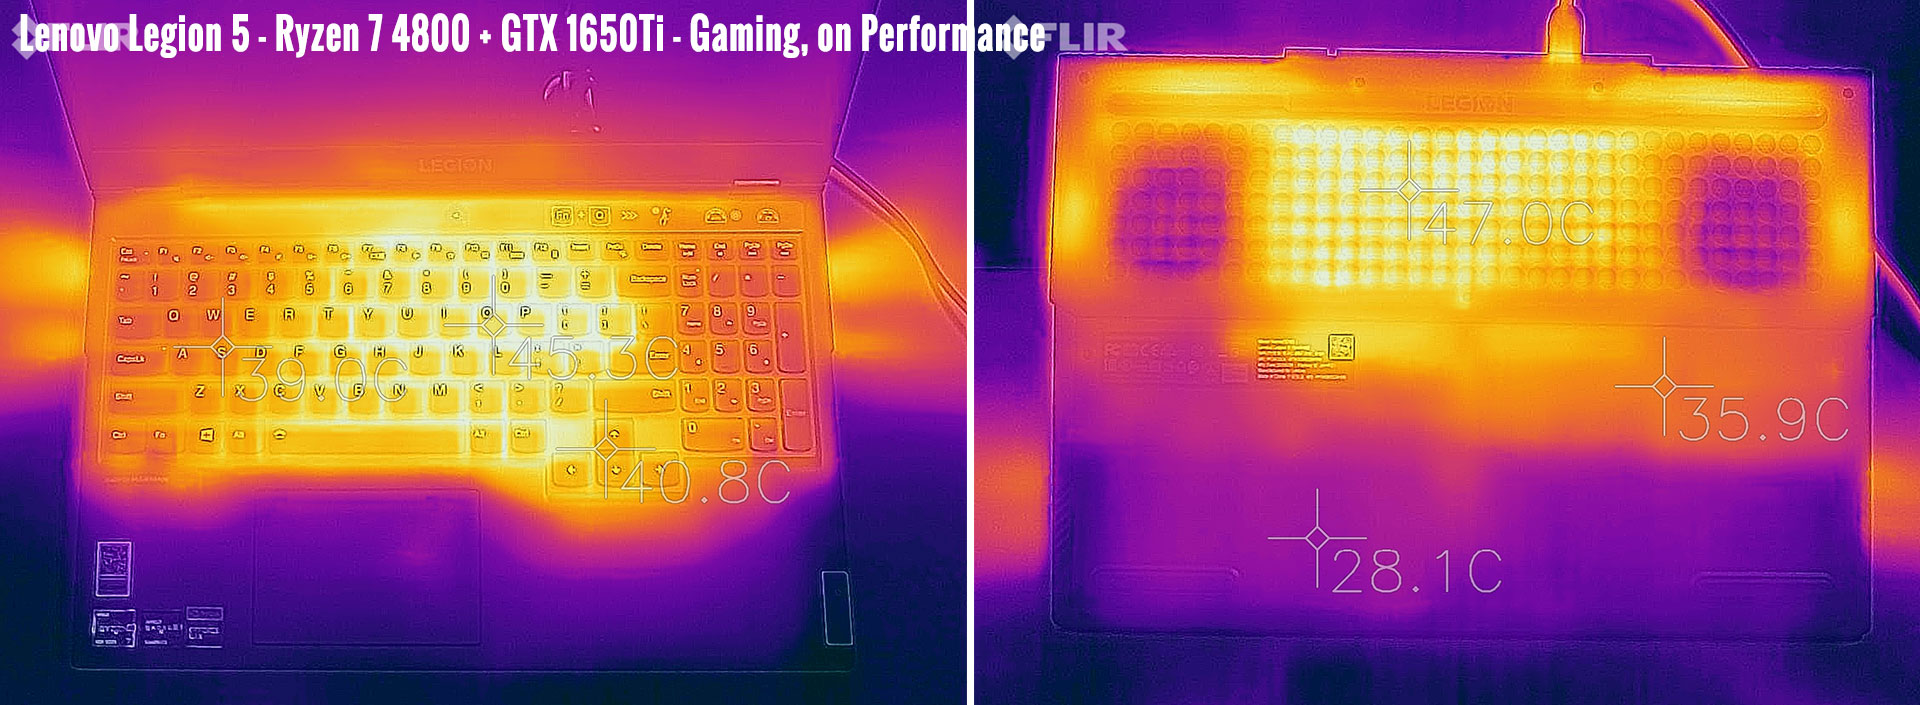 temperatures legion5 gaming performance